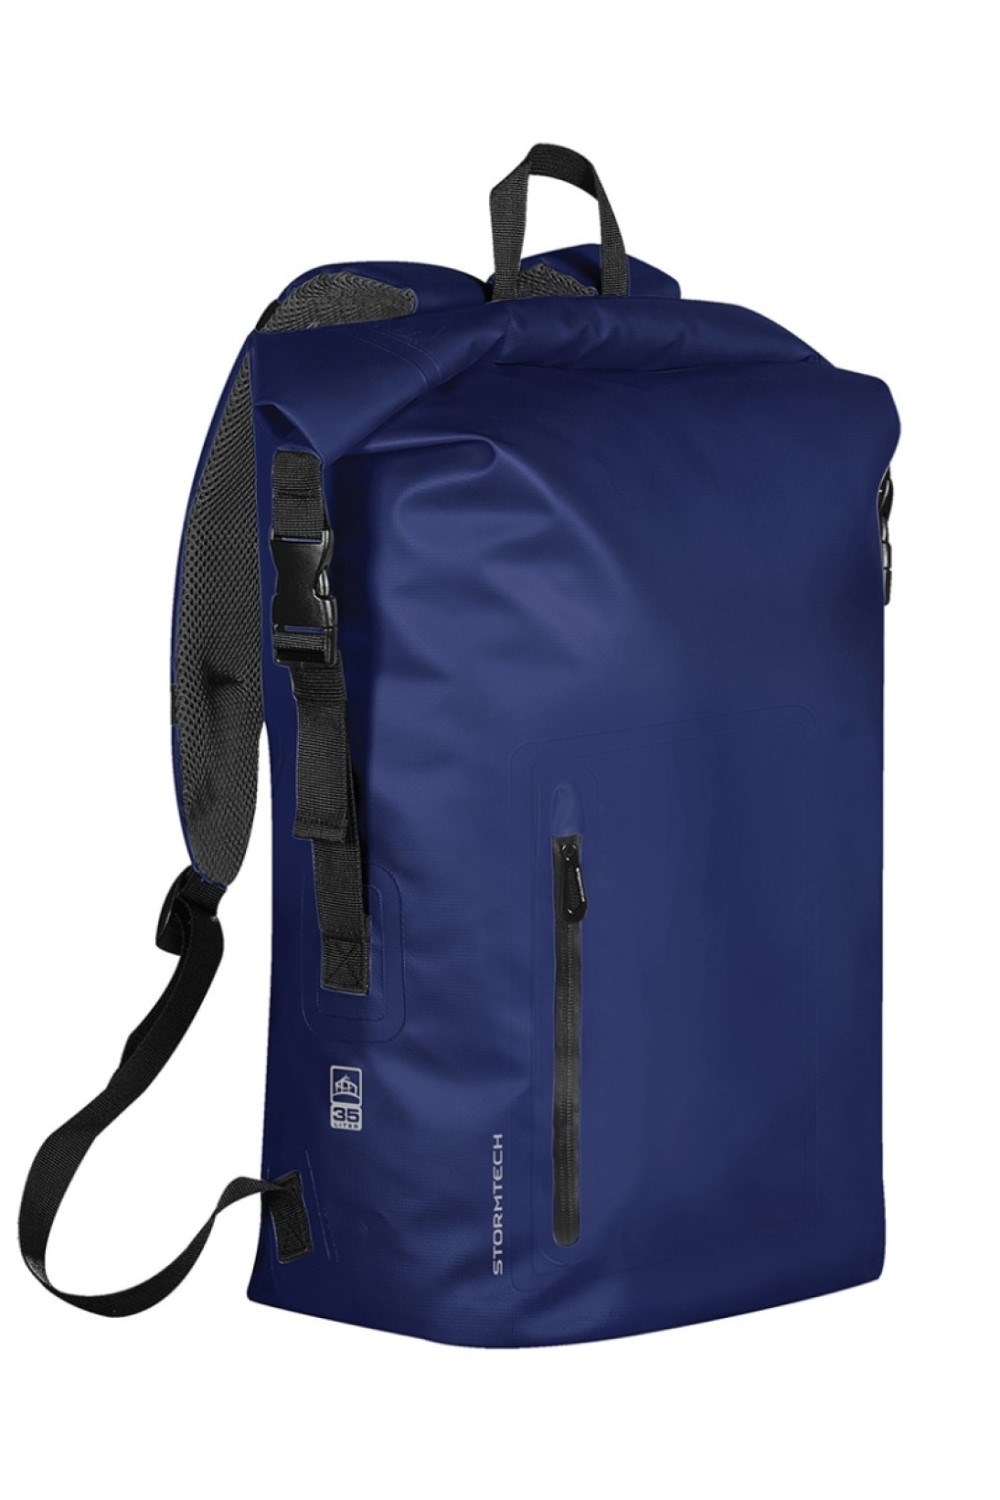 Cascade 35L Waterproof Backpack -